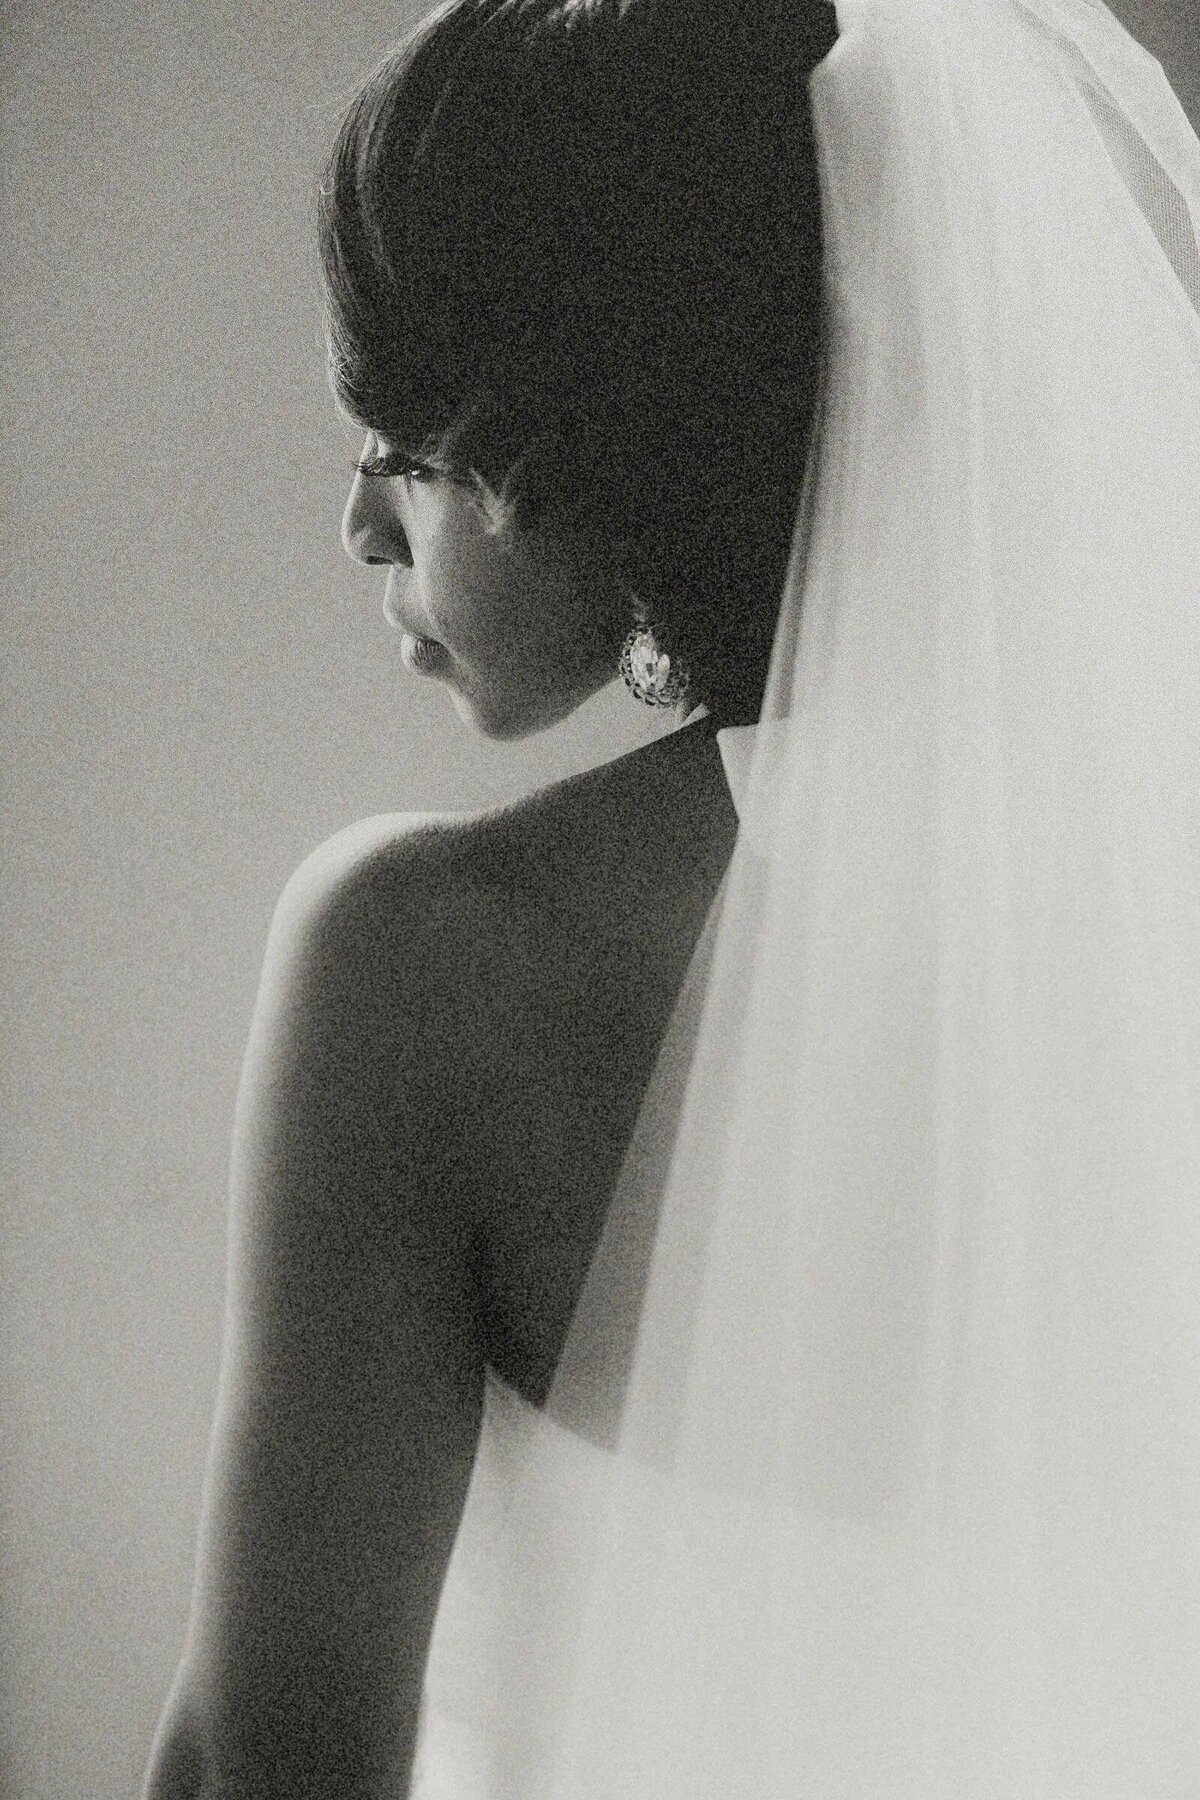 A bride looking back over her shoulder slightly